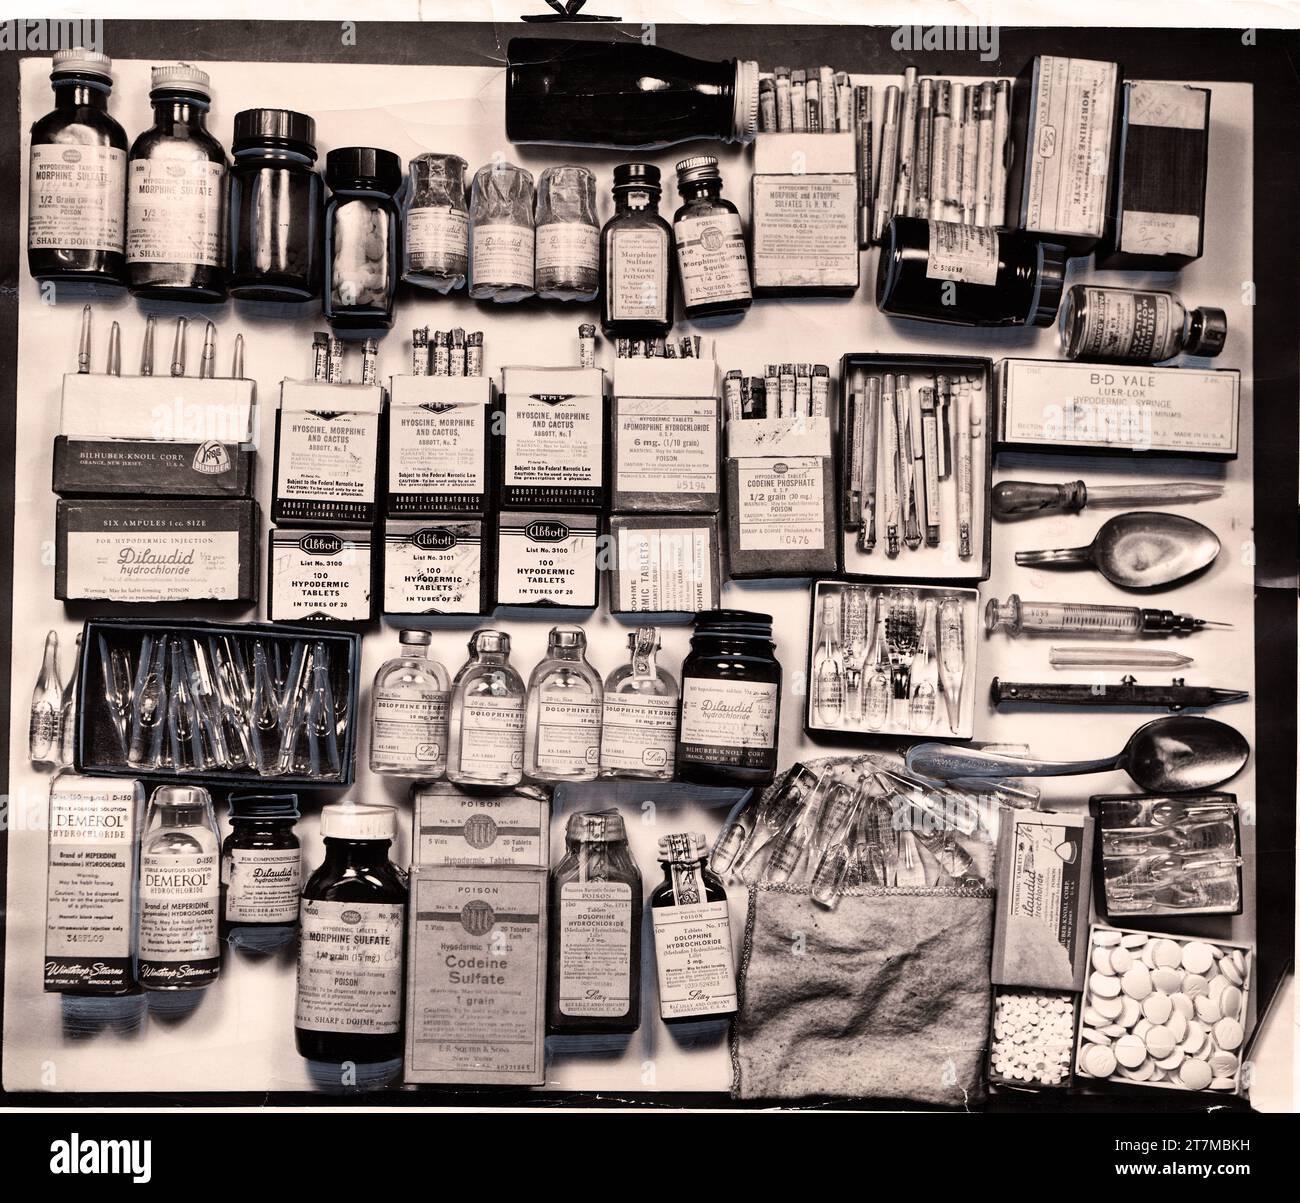 DRUGSTORE COWBOY : cache de stupéfiants volés dans les pharmacies par un gang dirigé par Clement (Short Stuff) Smith. Photo de presse pour le SUN TIMES (US) 1951. Banque D'Images